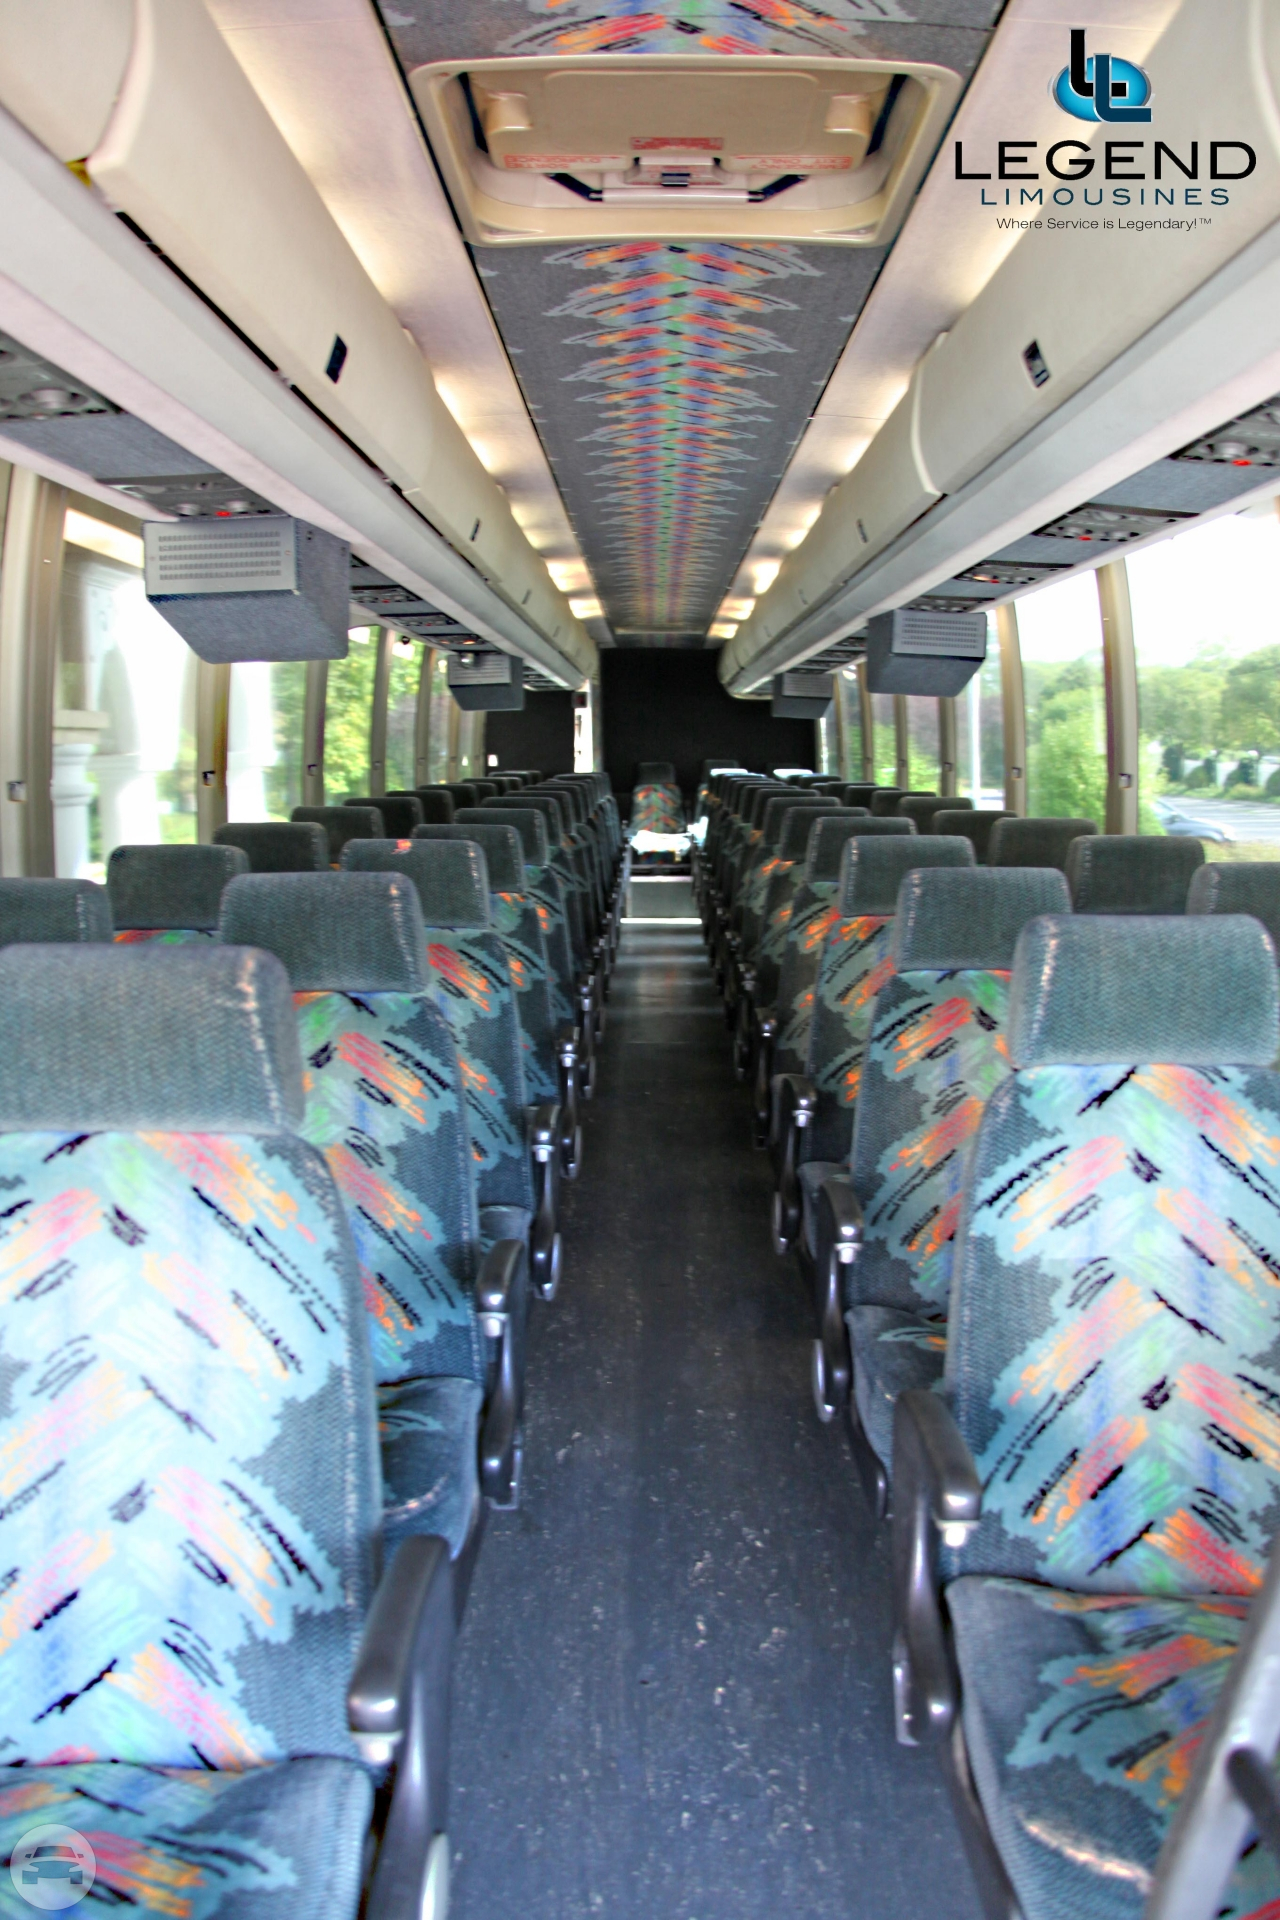 51-55 Passenger Coach Bus
Coach Bus /
New York, NY

 / Hourly $135.00
